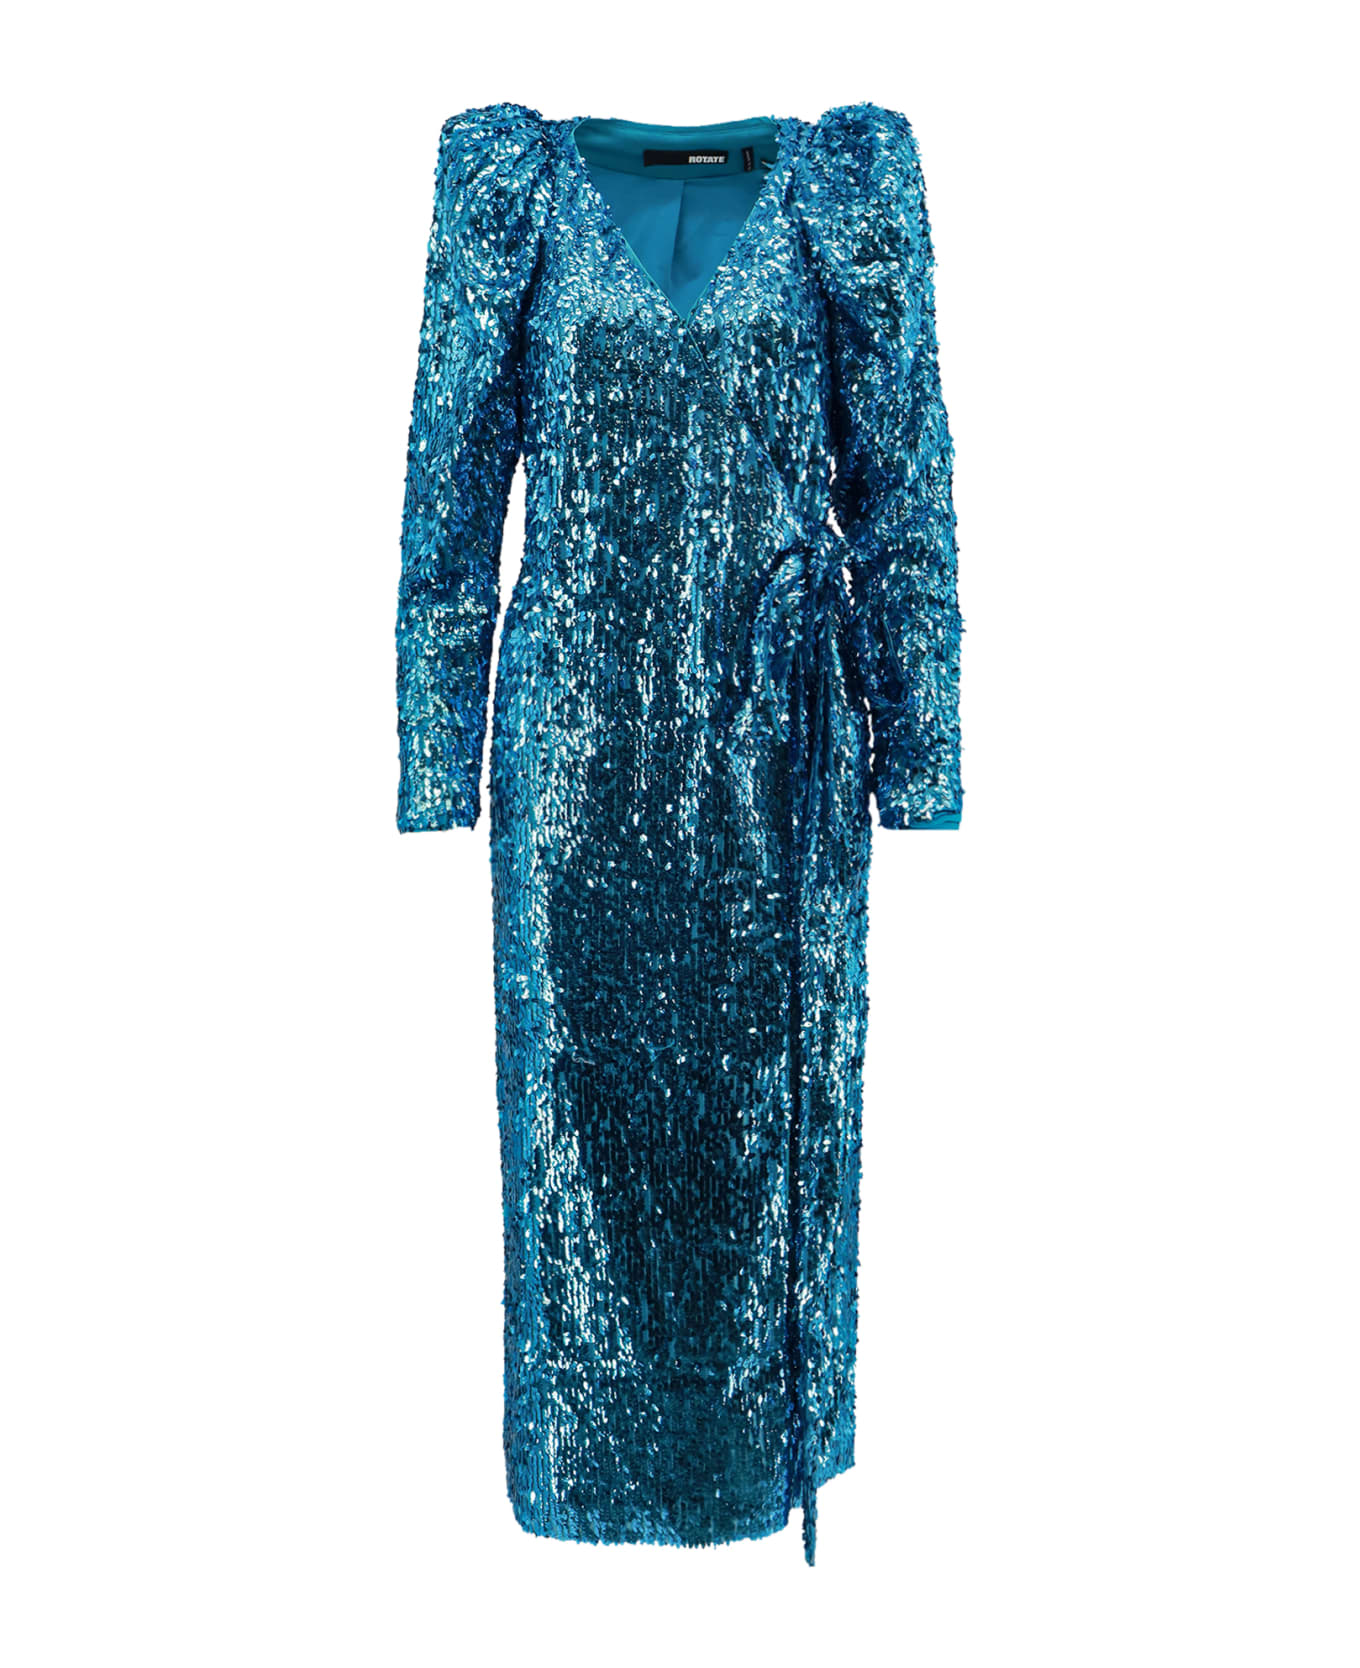 Rotate by Birger Christensen Dress - Blue